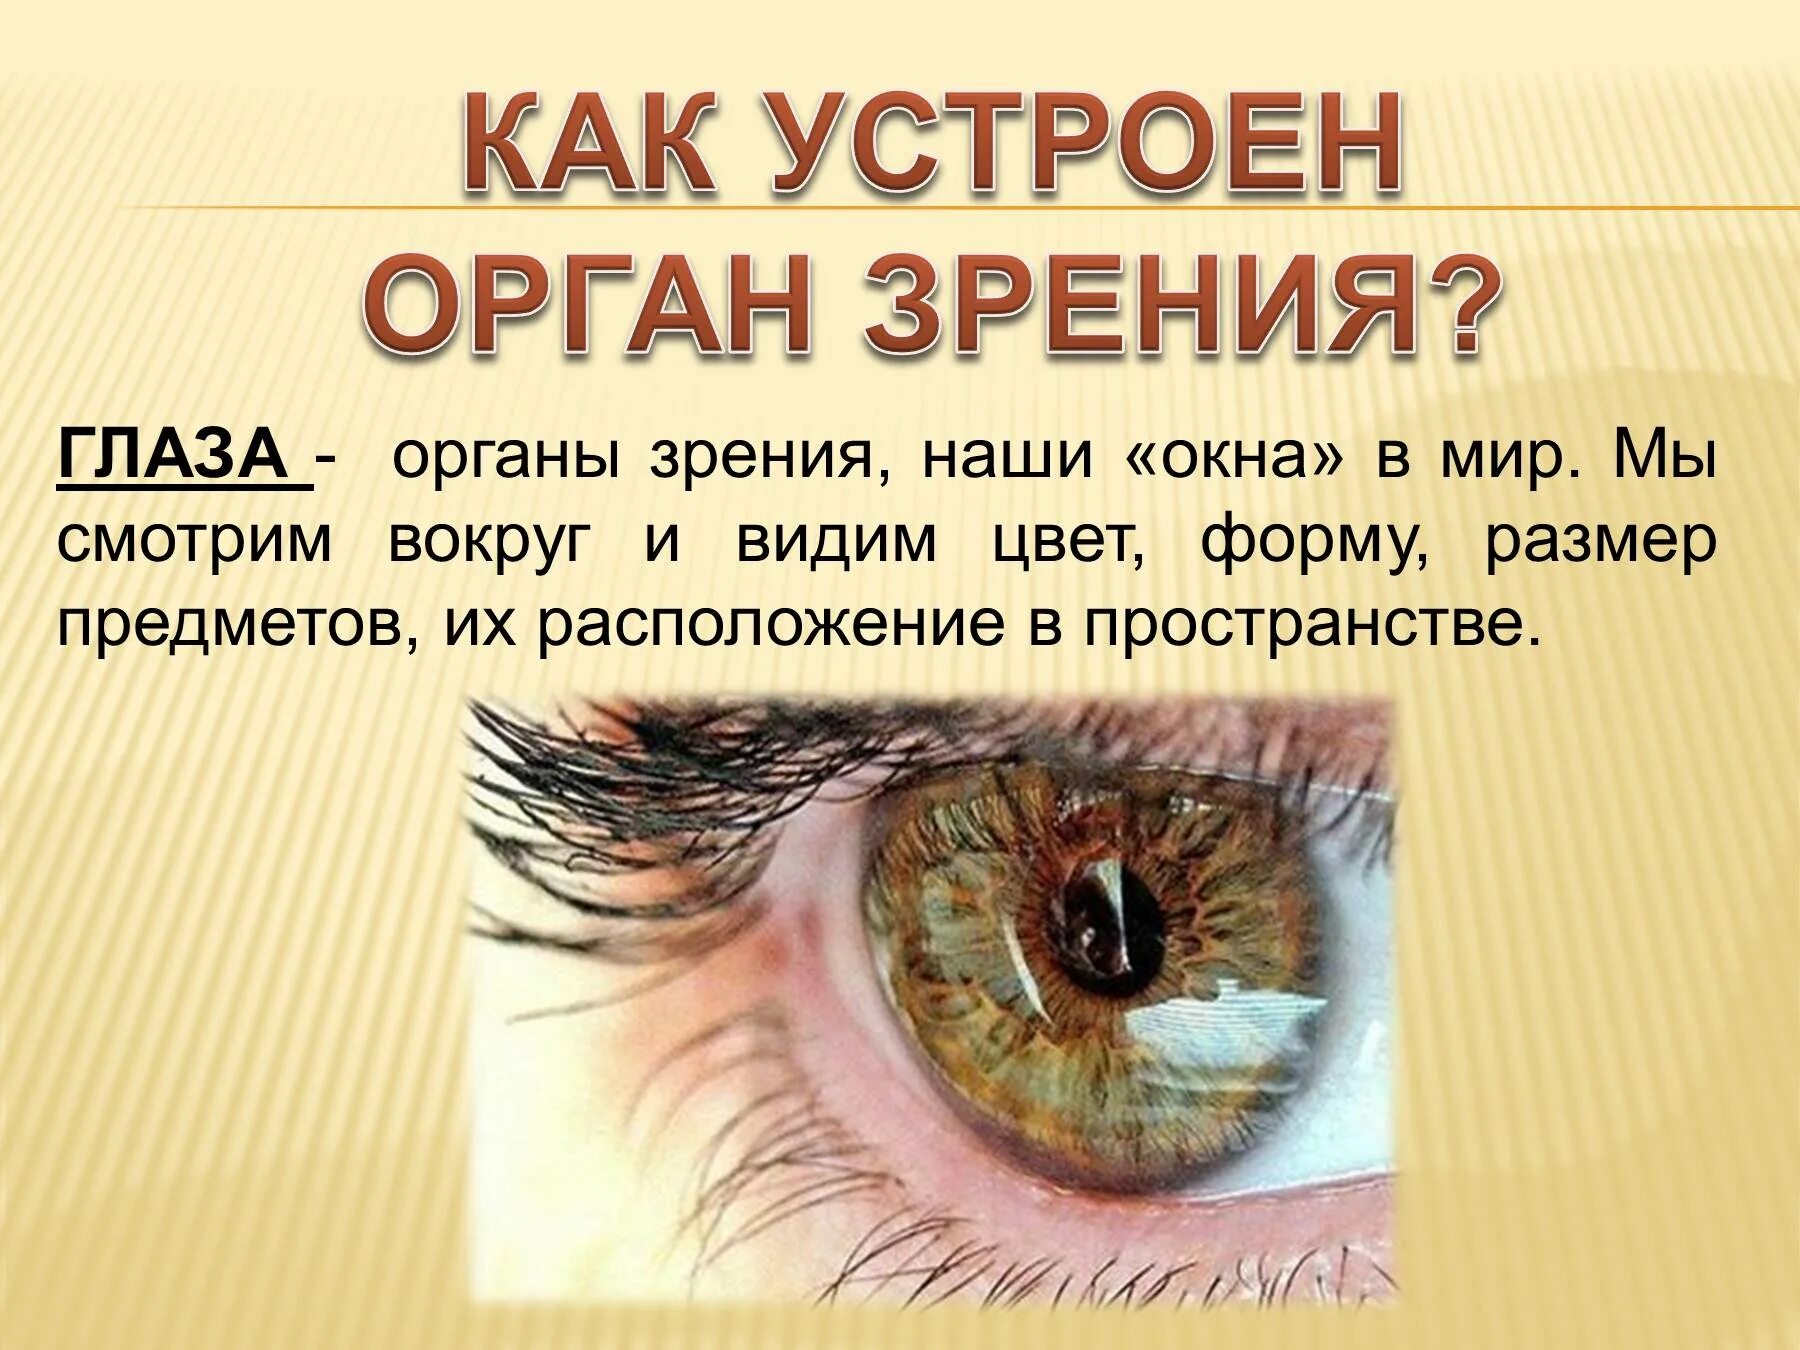 Зрительные органы чувств. Орган зрения презентация. Презентация на тему глаз. Презентация на тему органы зрения. Презентация на тему зрение человека.